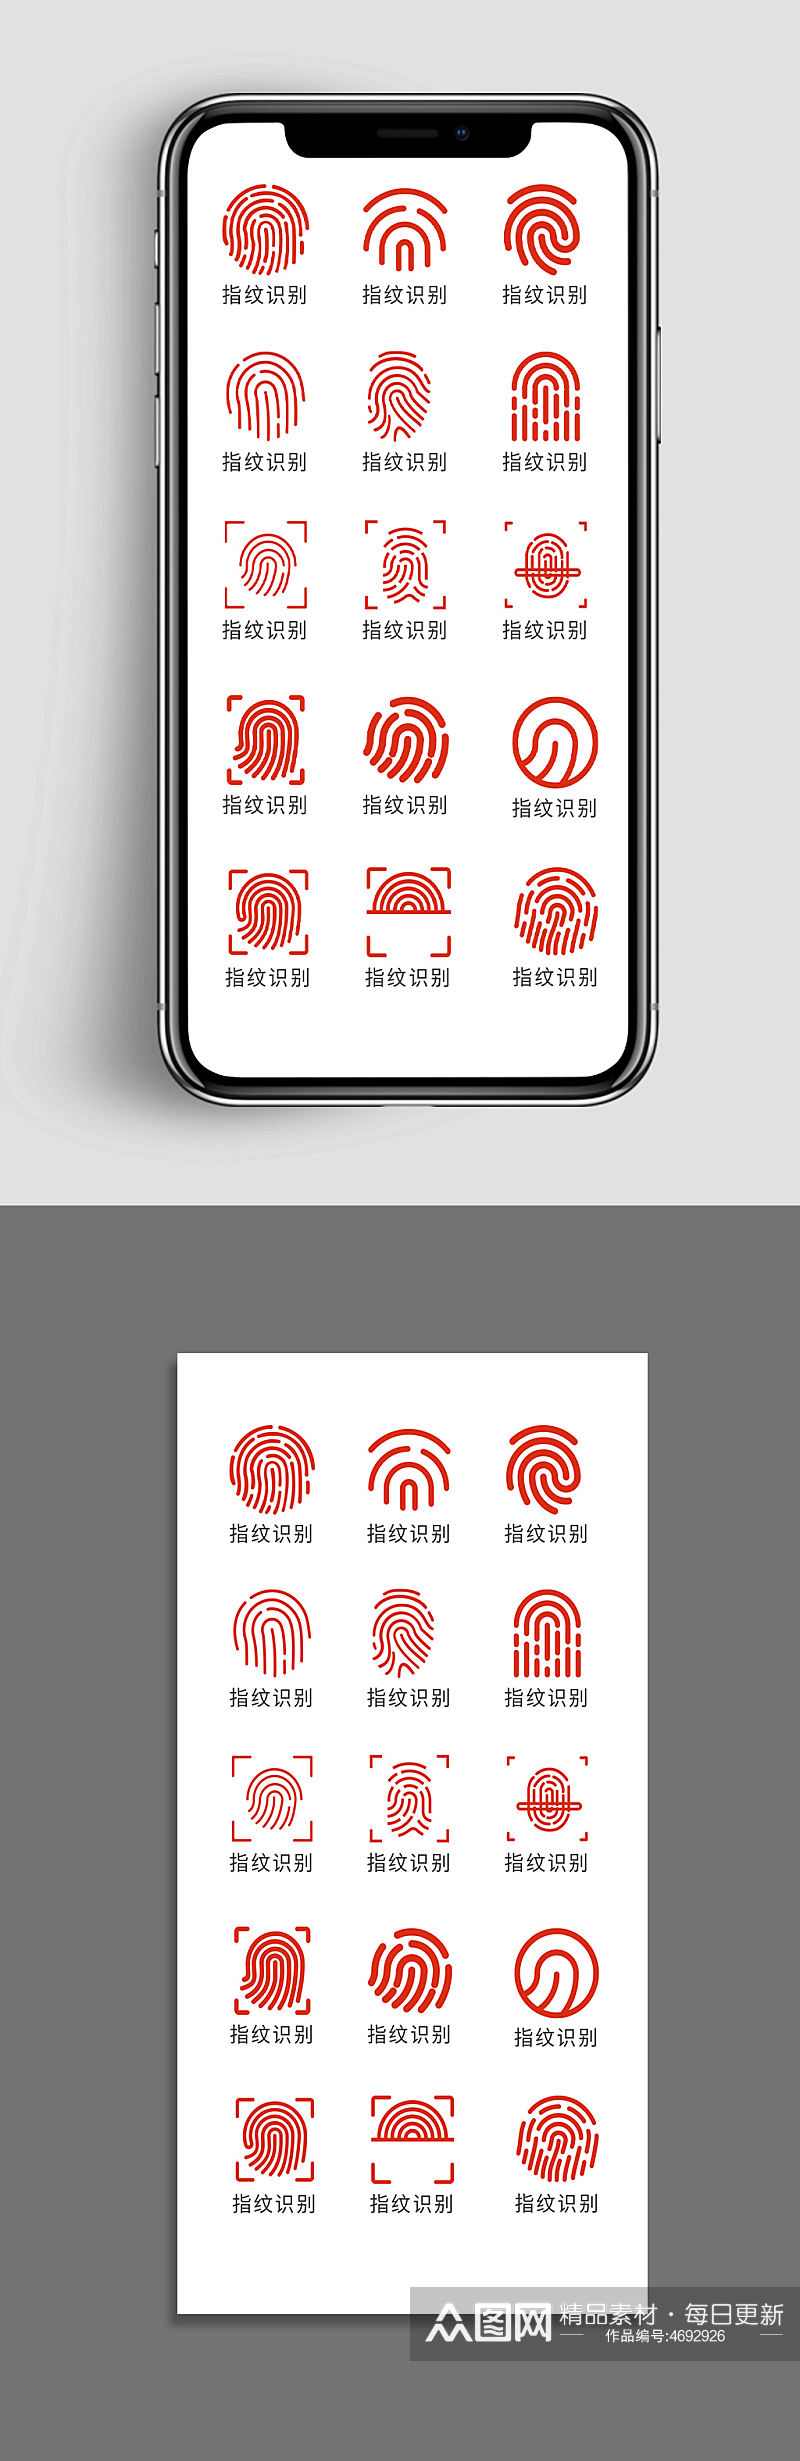 手机指纹识别解锁icon图标素材